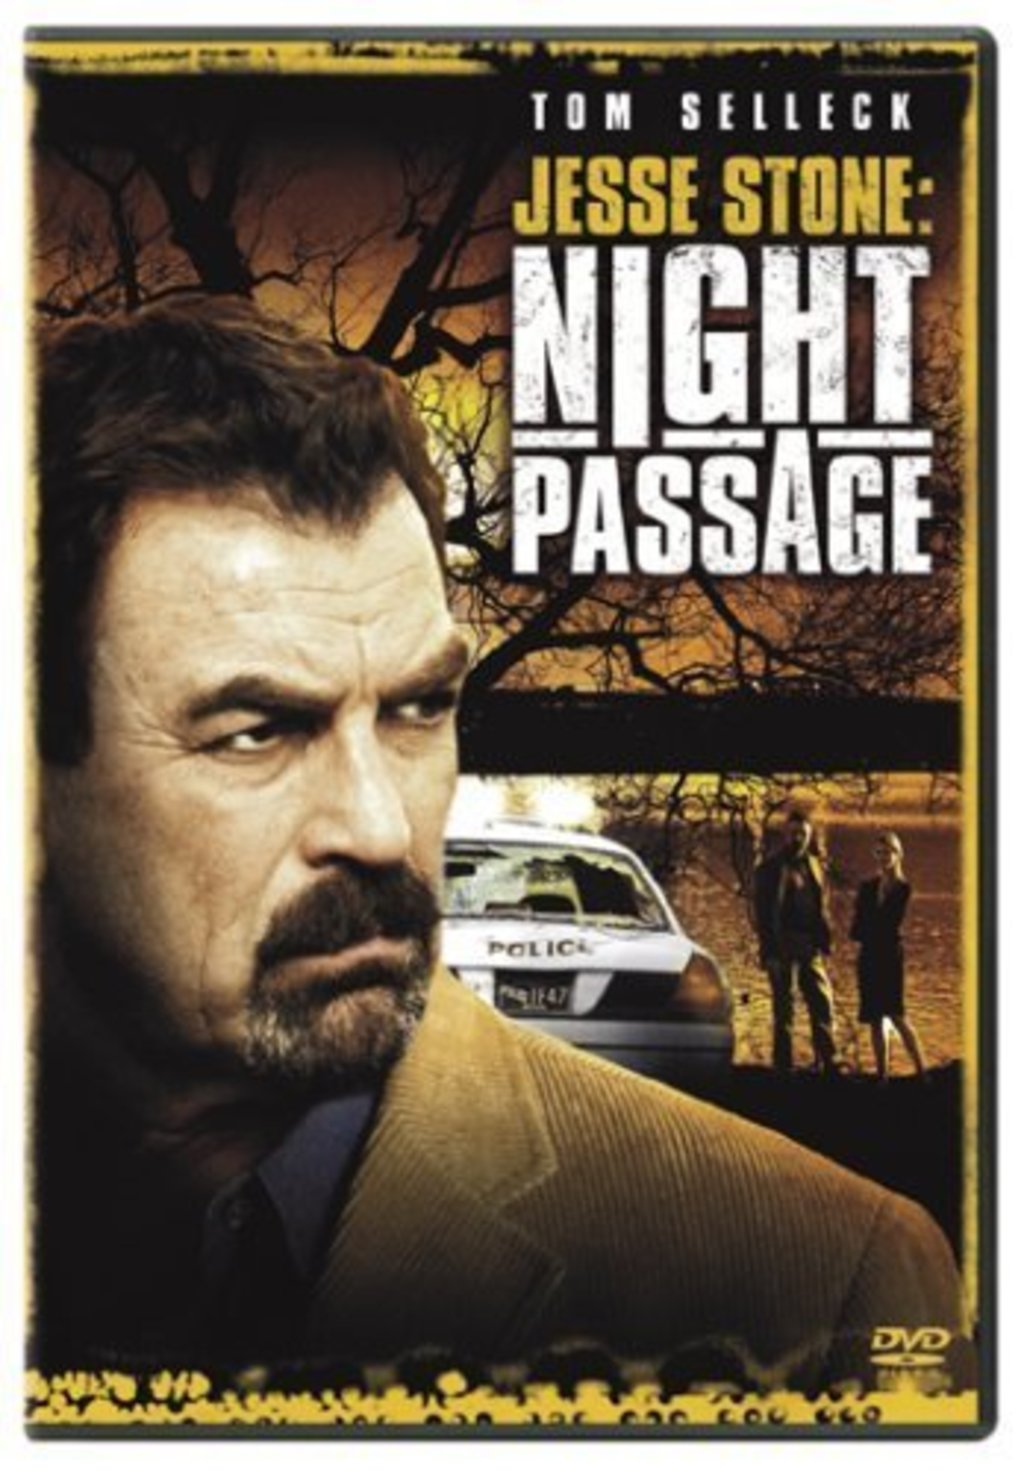 Watch Jesse Stone Night Passage on Netflix Today!